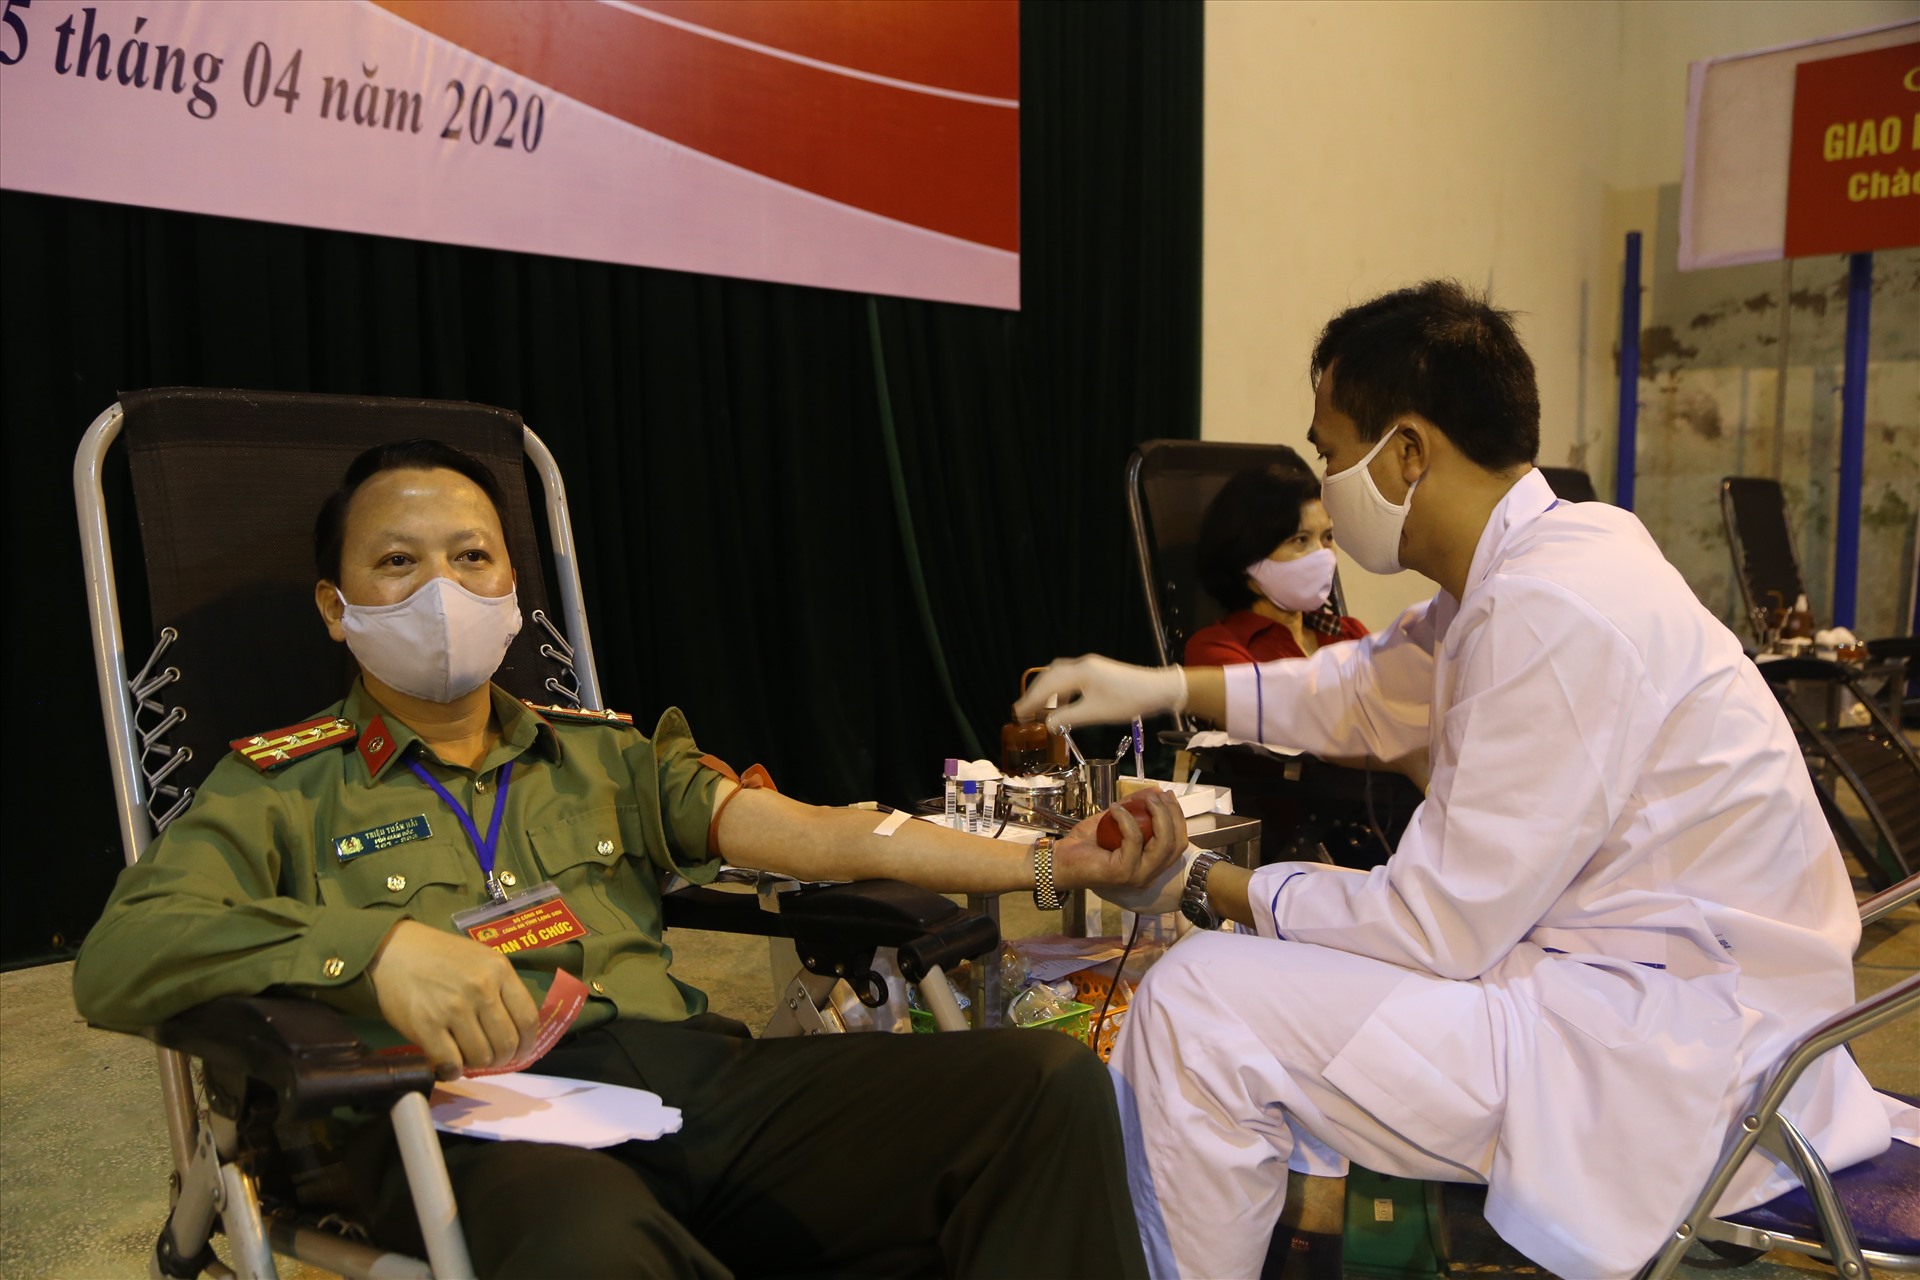 Đại tá Triệu Tuấn Hải - Phó Giám đốc Công an tỉnh tham gia hiến máu. Ảnh: Thủy Quyên - Hoàng Thơ